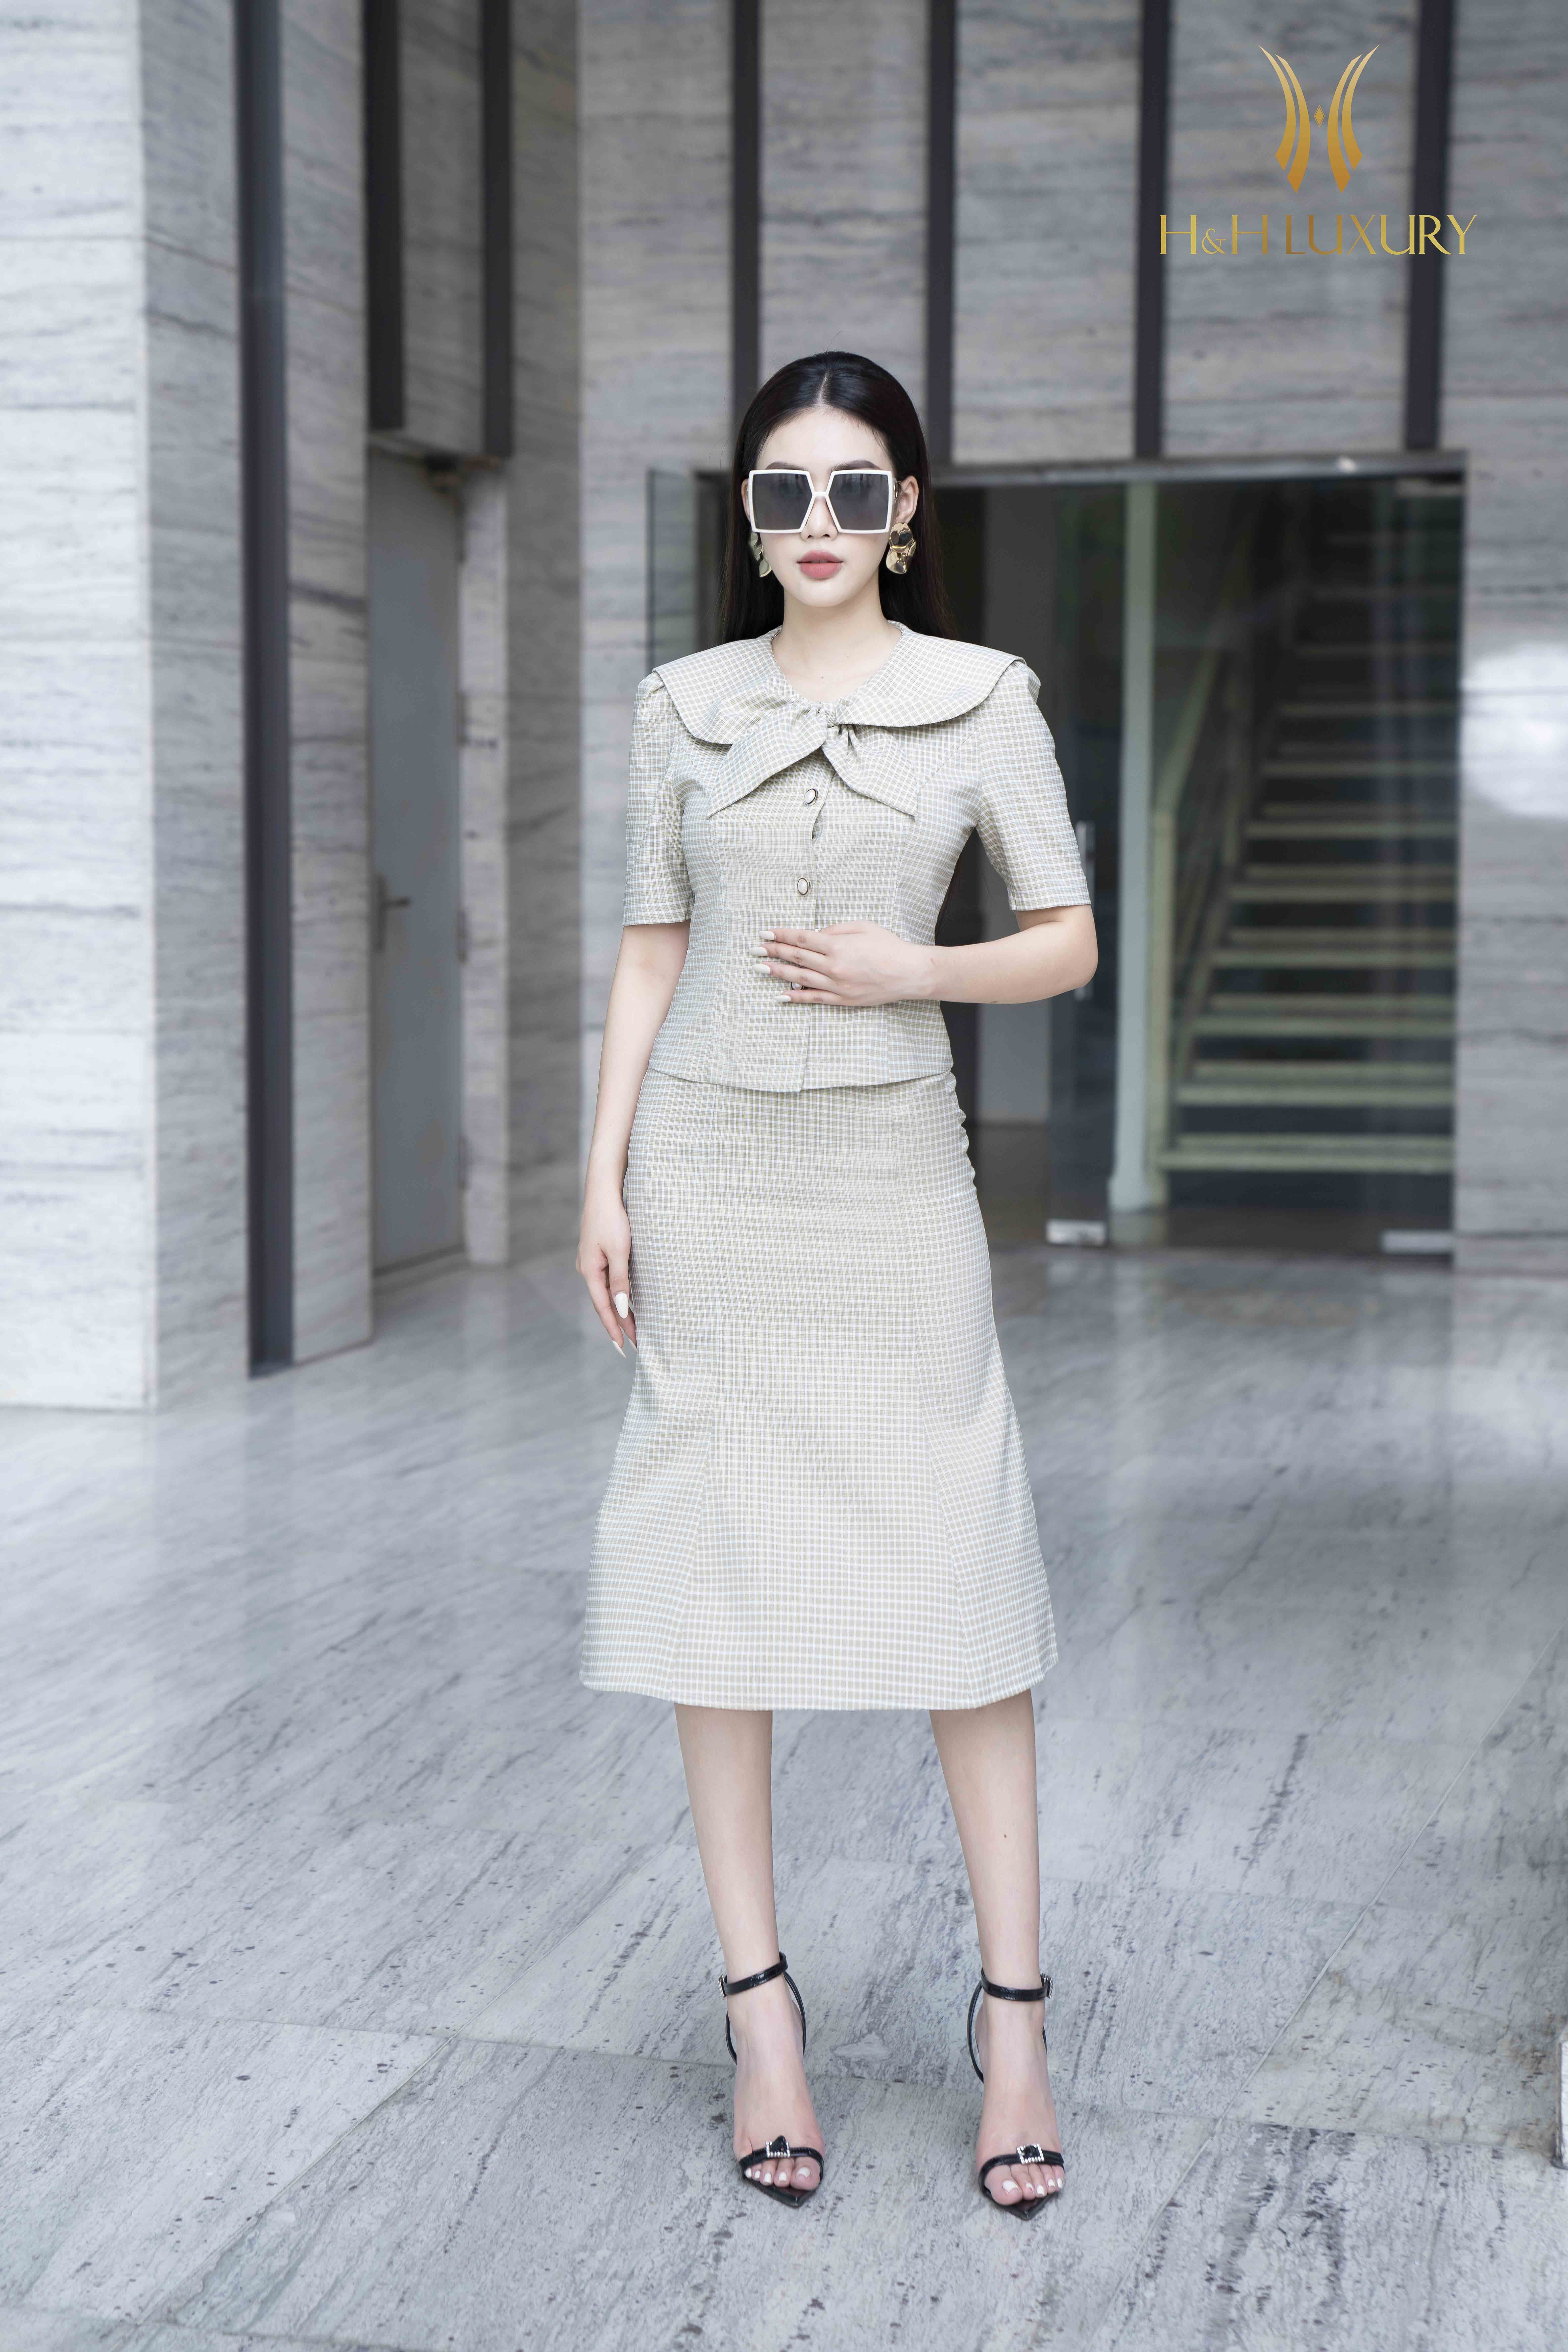 Đầm Hàn Quốc tuổi trung niên đẹp chuẩn mực thời trang - Thời Trang NEVA -  Luôn Đón Đầu Xu Hướng